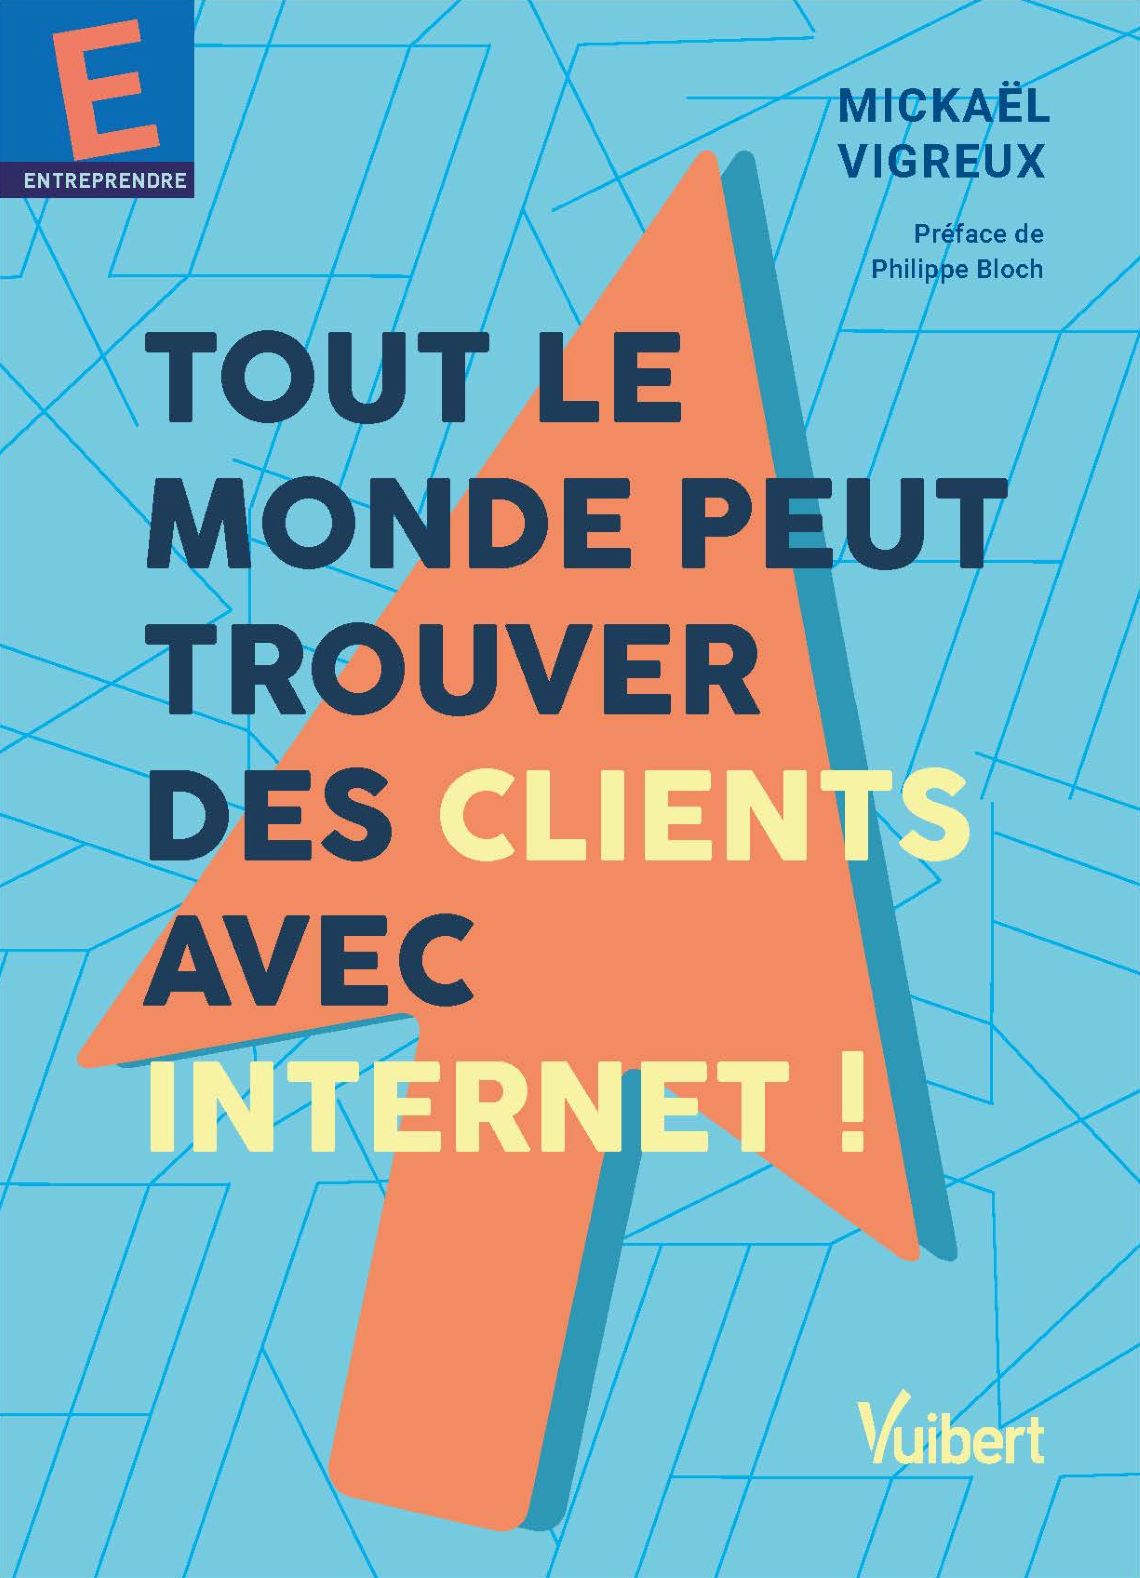 Couverture de Mickaël Vigreux, Tout le monde peut trouver des clients avec Internet !, éditions Vuibert, janvier 2021.